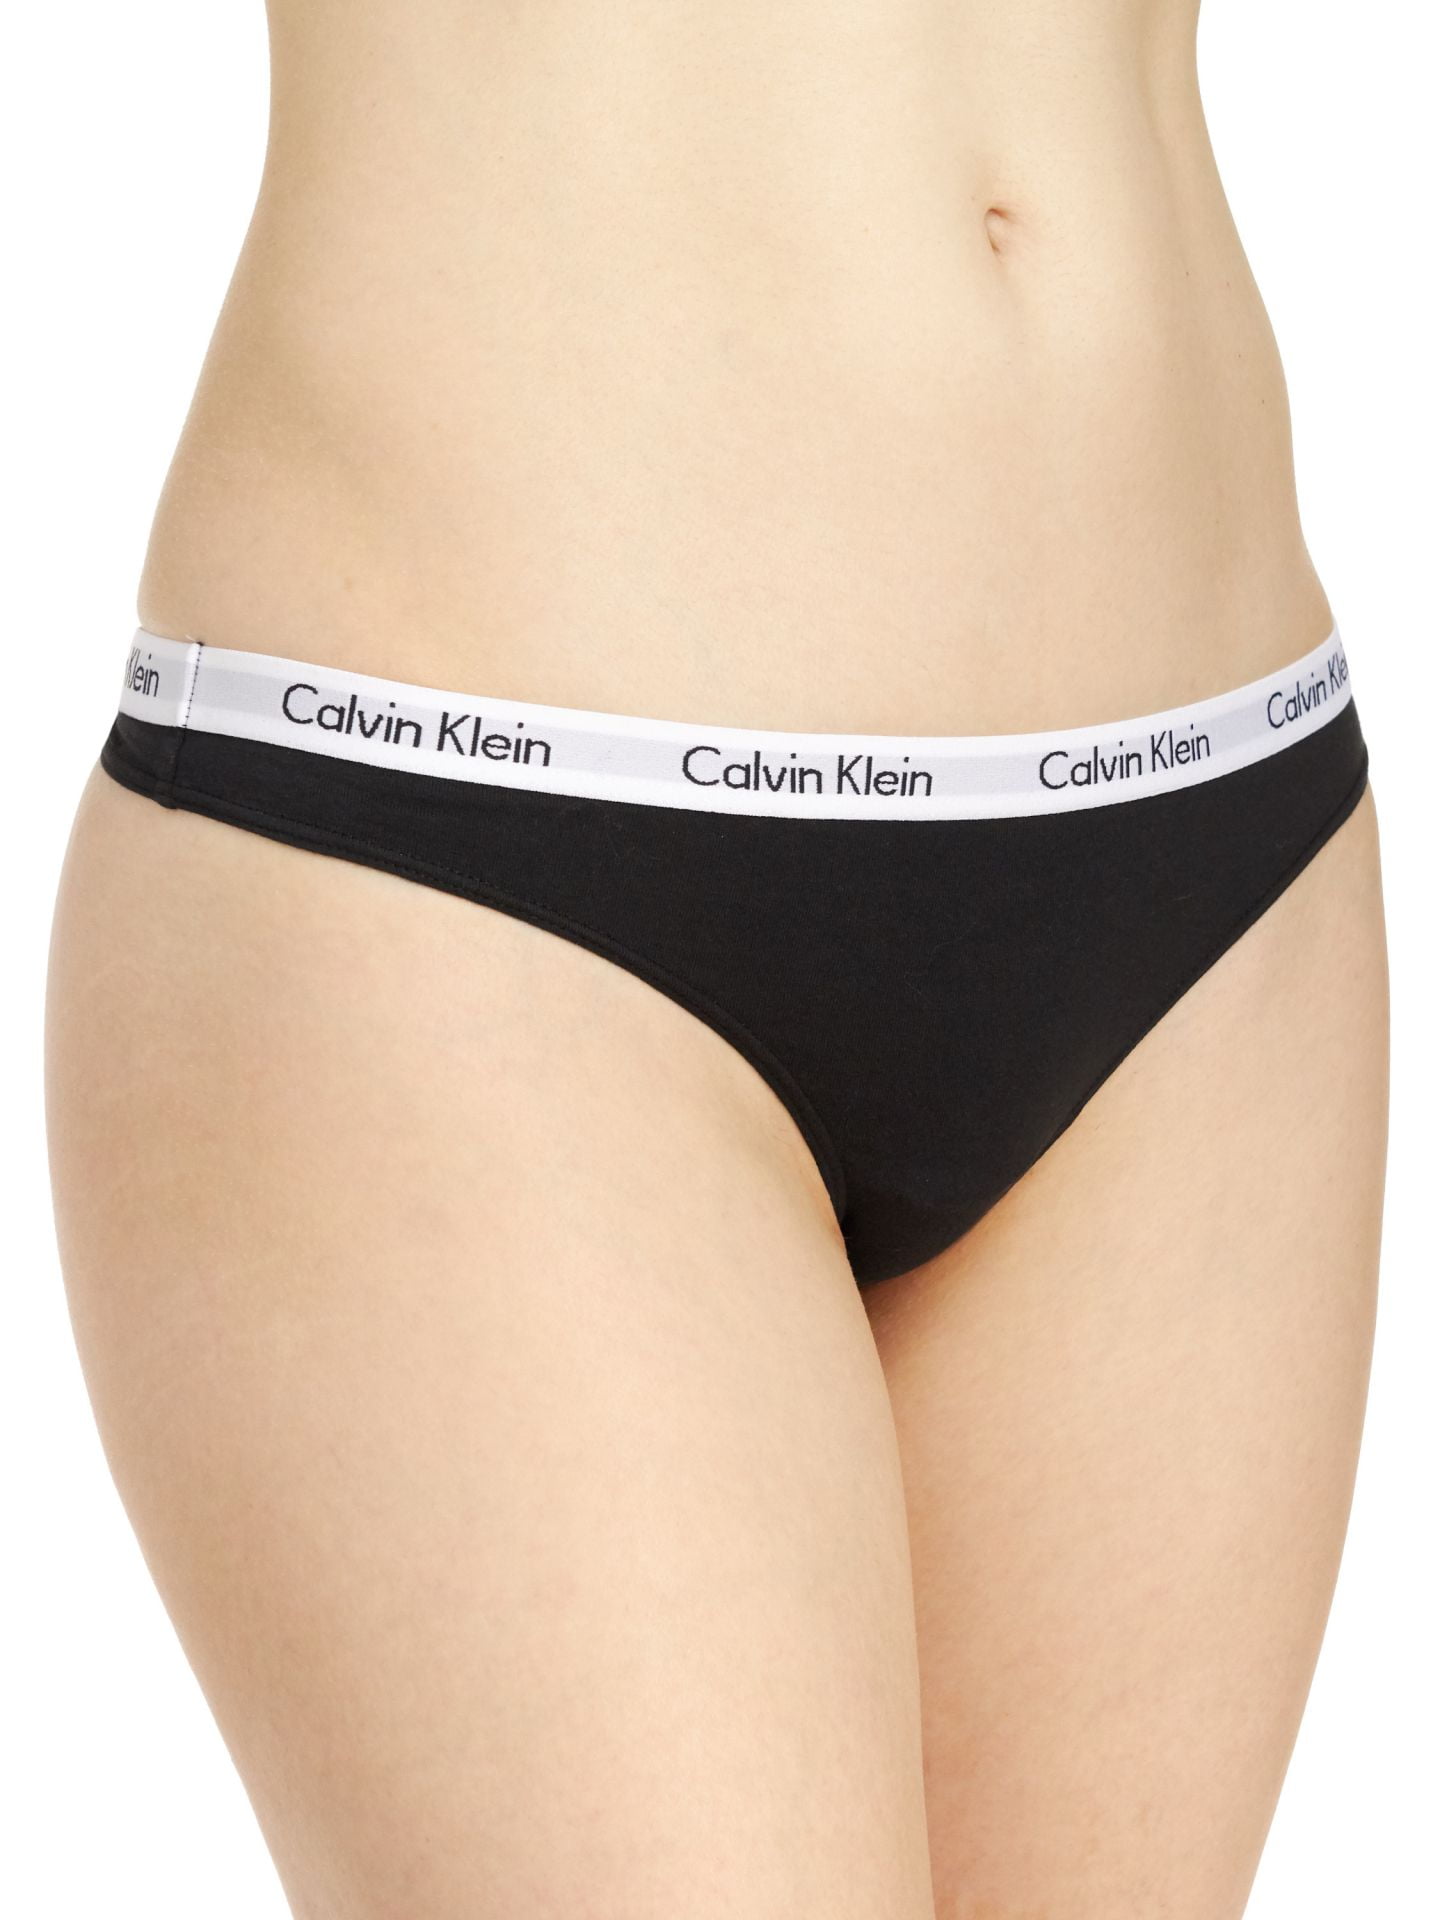 Calvin Klein Carousel 3 Thong Pack, - Black/Grey/White, Large Women\'s